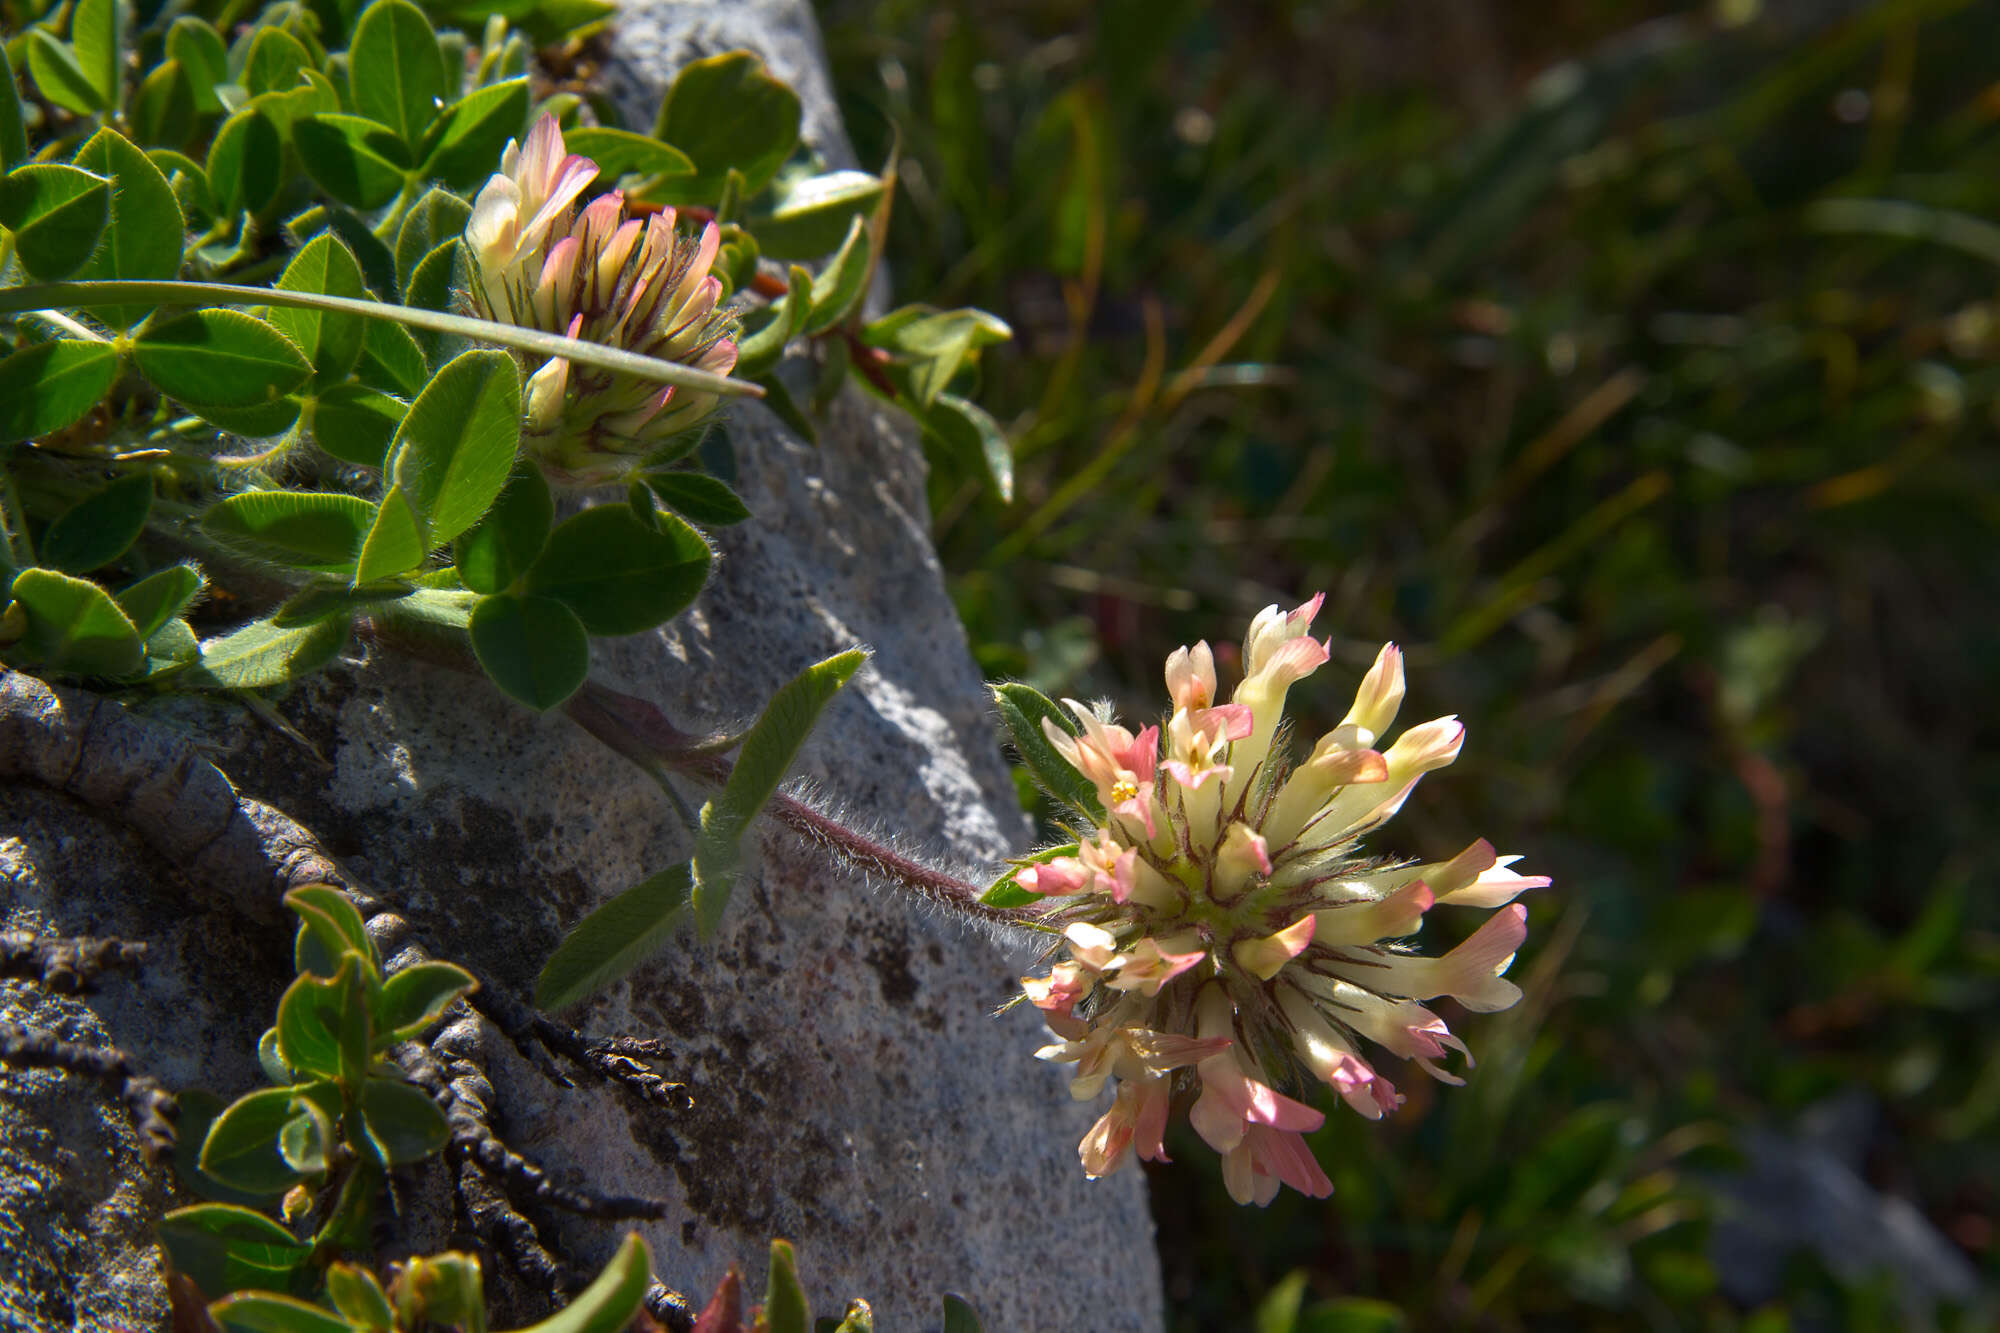 Image of Trifolium noricum Wulfen